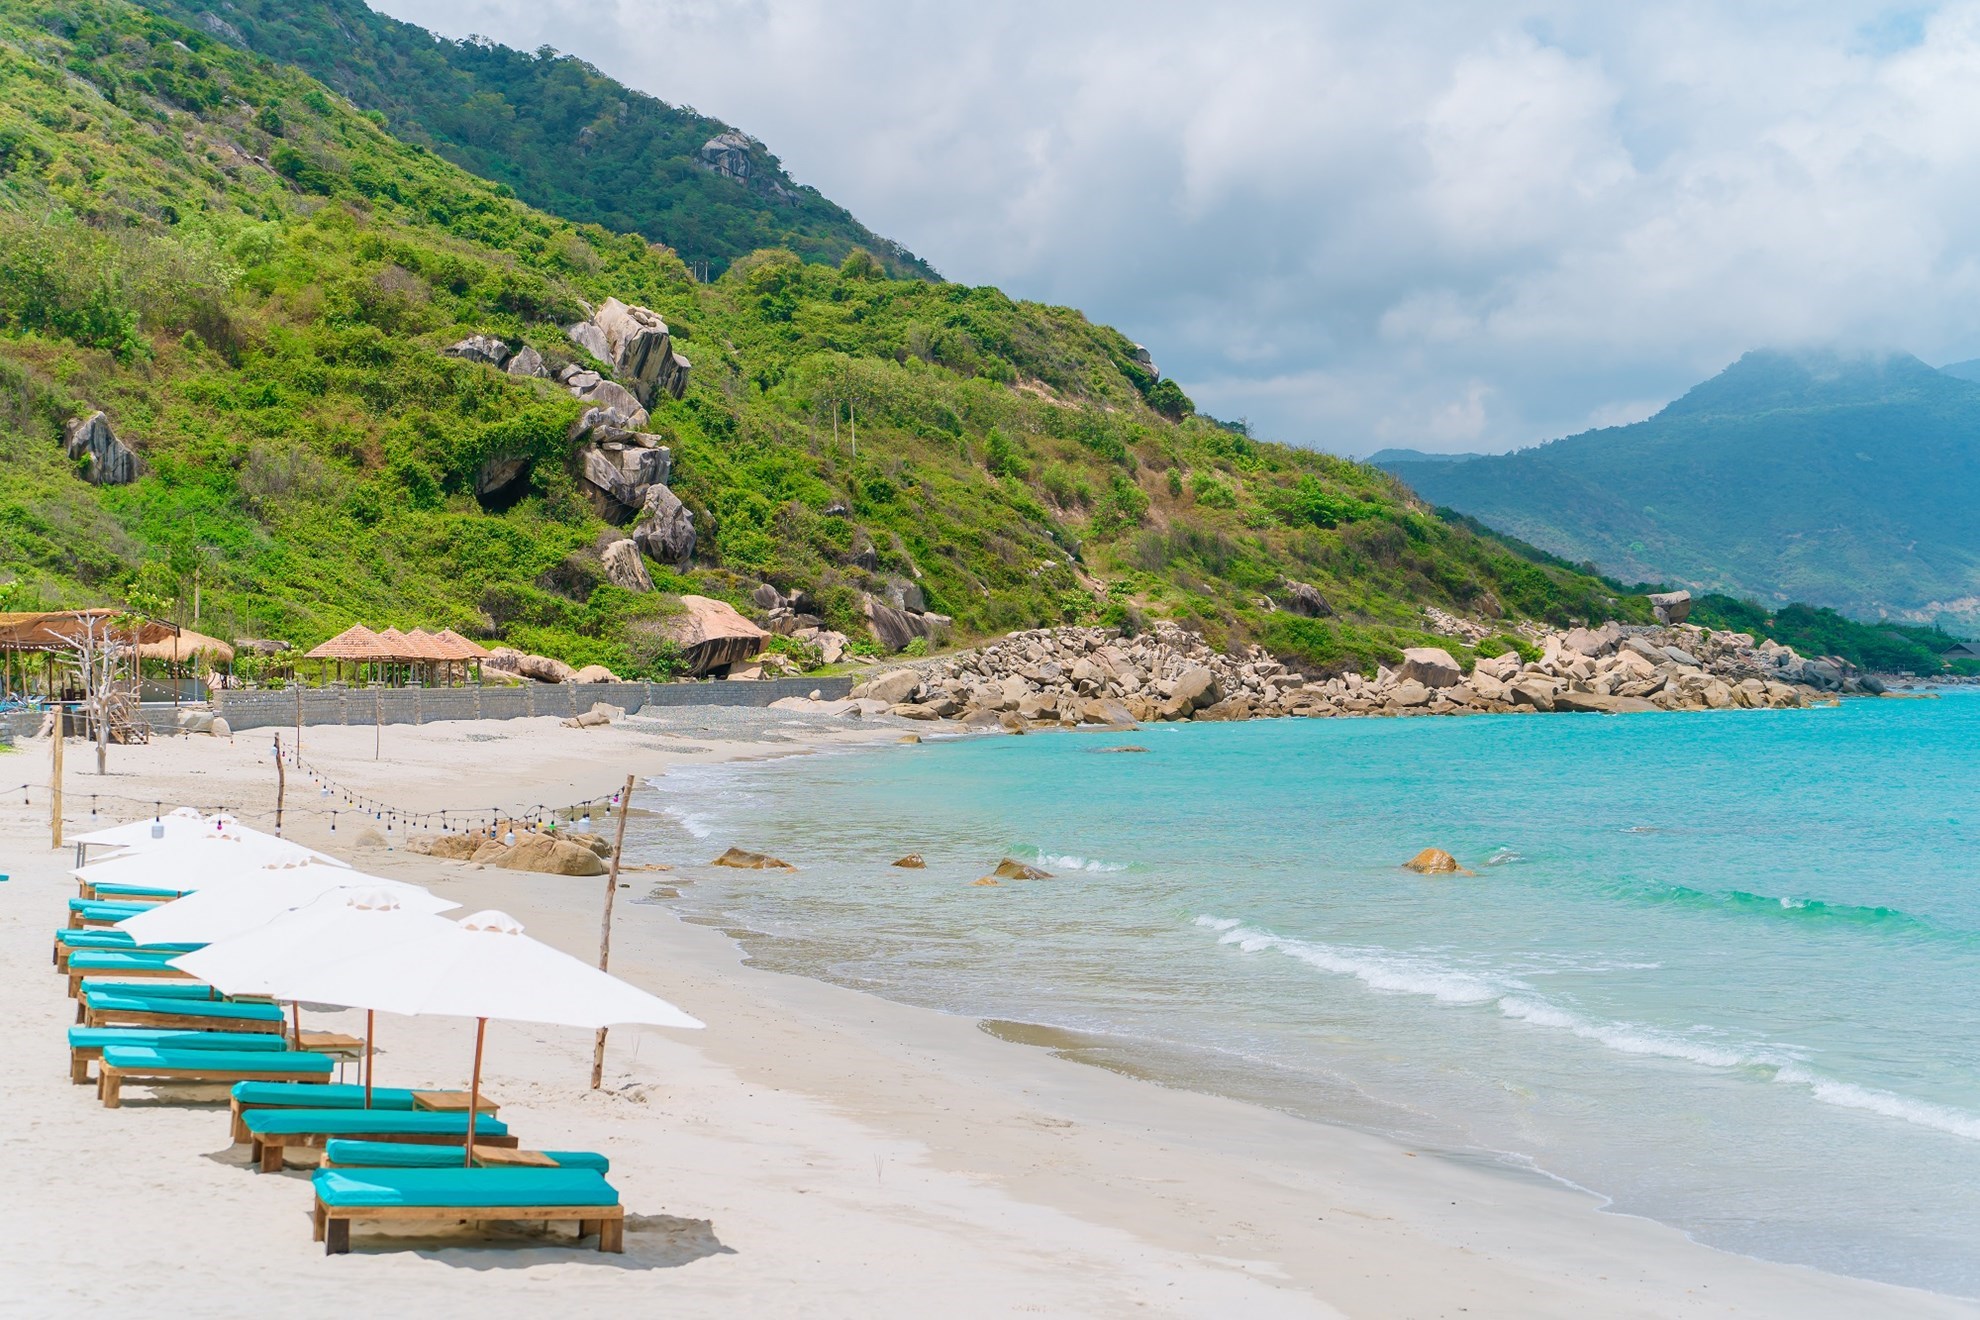 Phát hiện bãi biển ít lên quảng cáo chỉ cách Nha Trang 60km, mệnh danh là “thủ phủ” của loạt resort 5 sao- Ảnh 4.